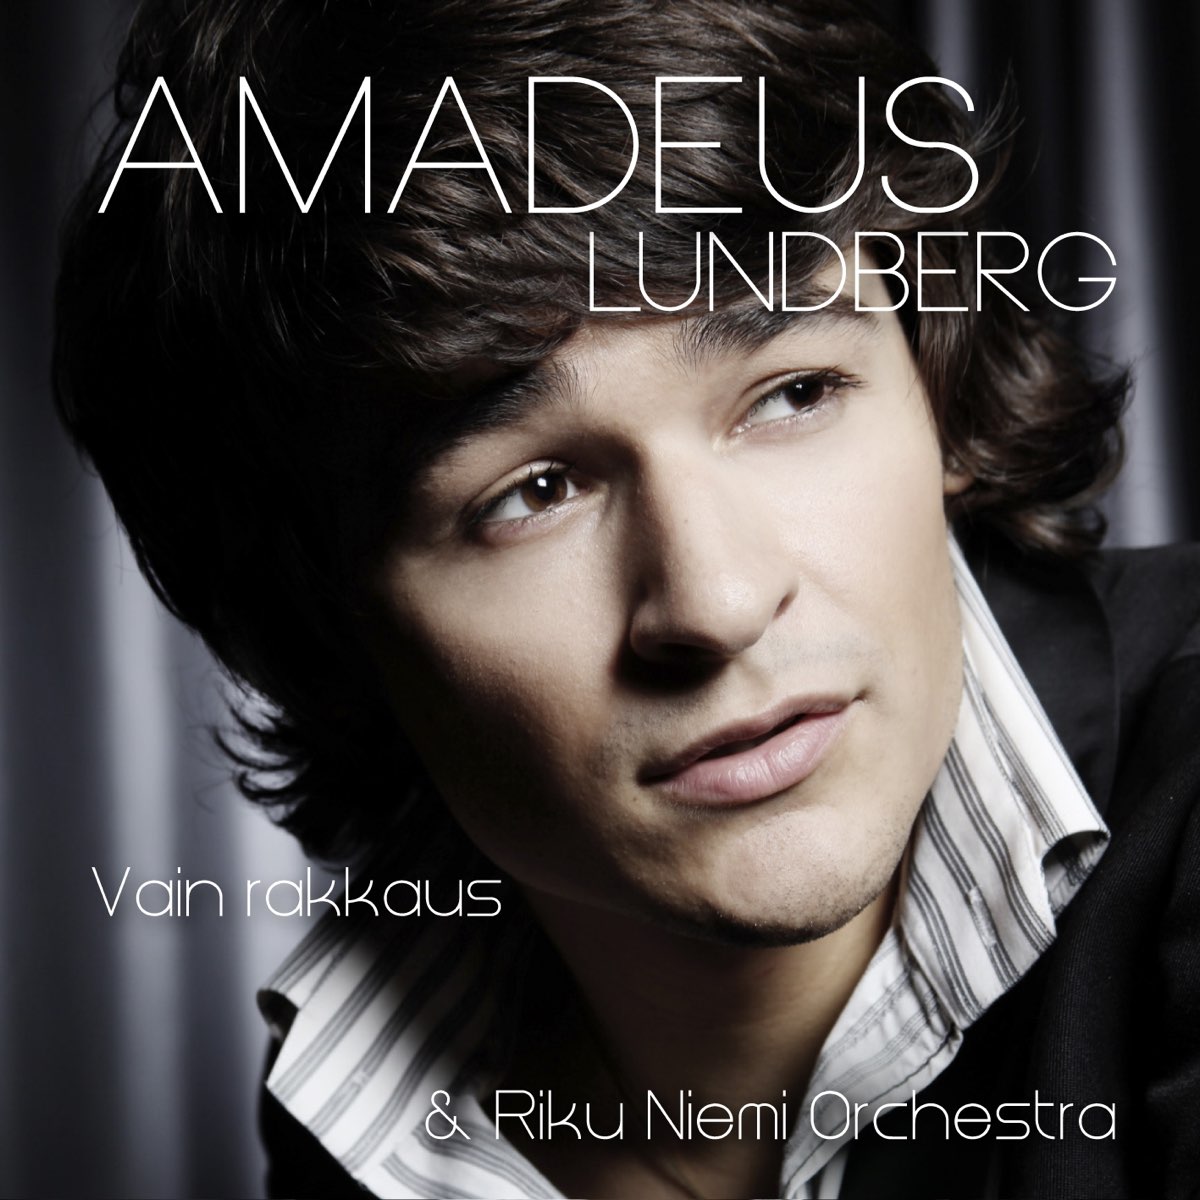 Vain Rakkaus by Amadeus Lundberg on Apple Music